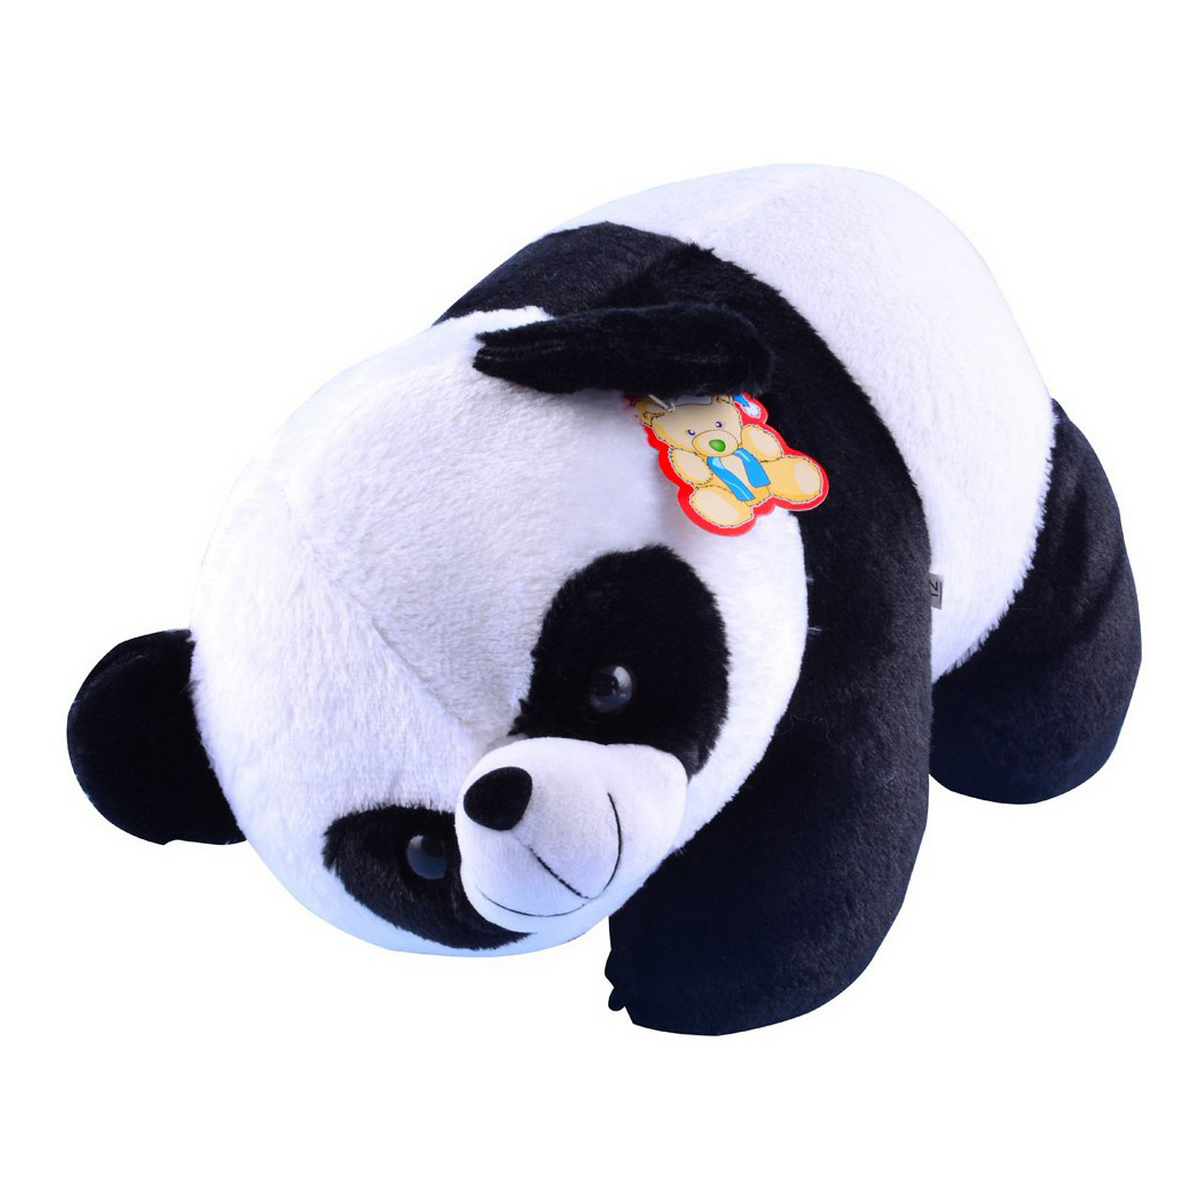 Polar Bear Soft Toy for Kids 40cm - Black & white